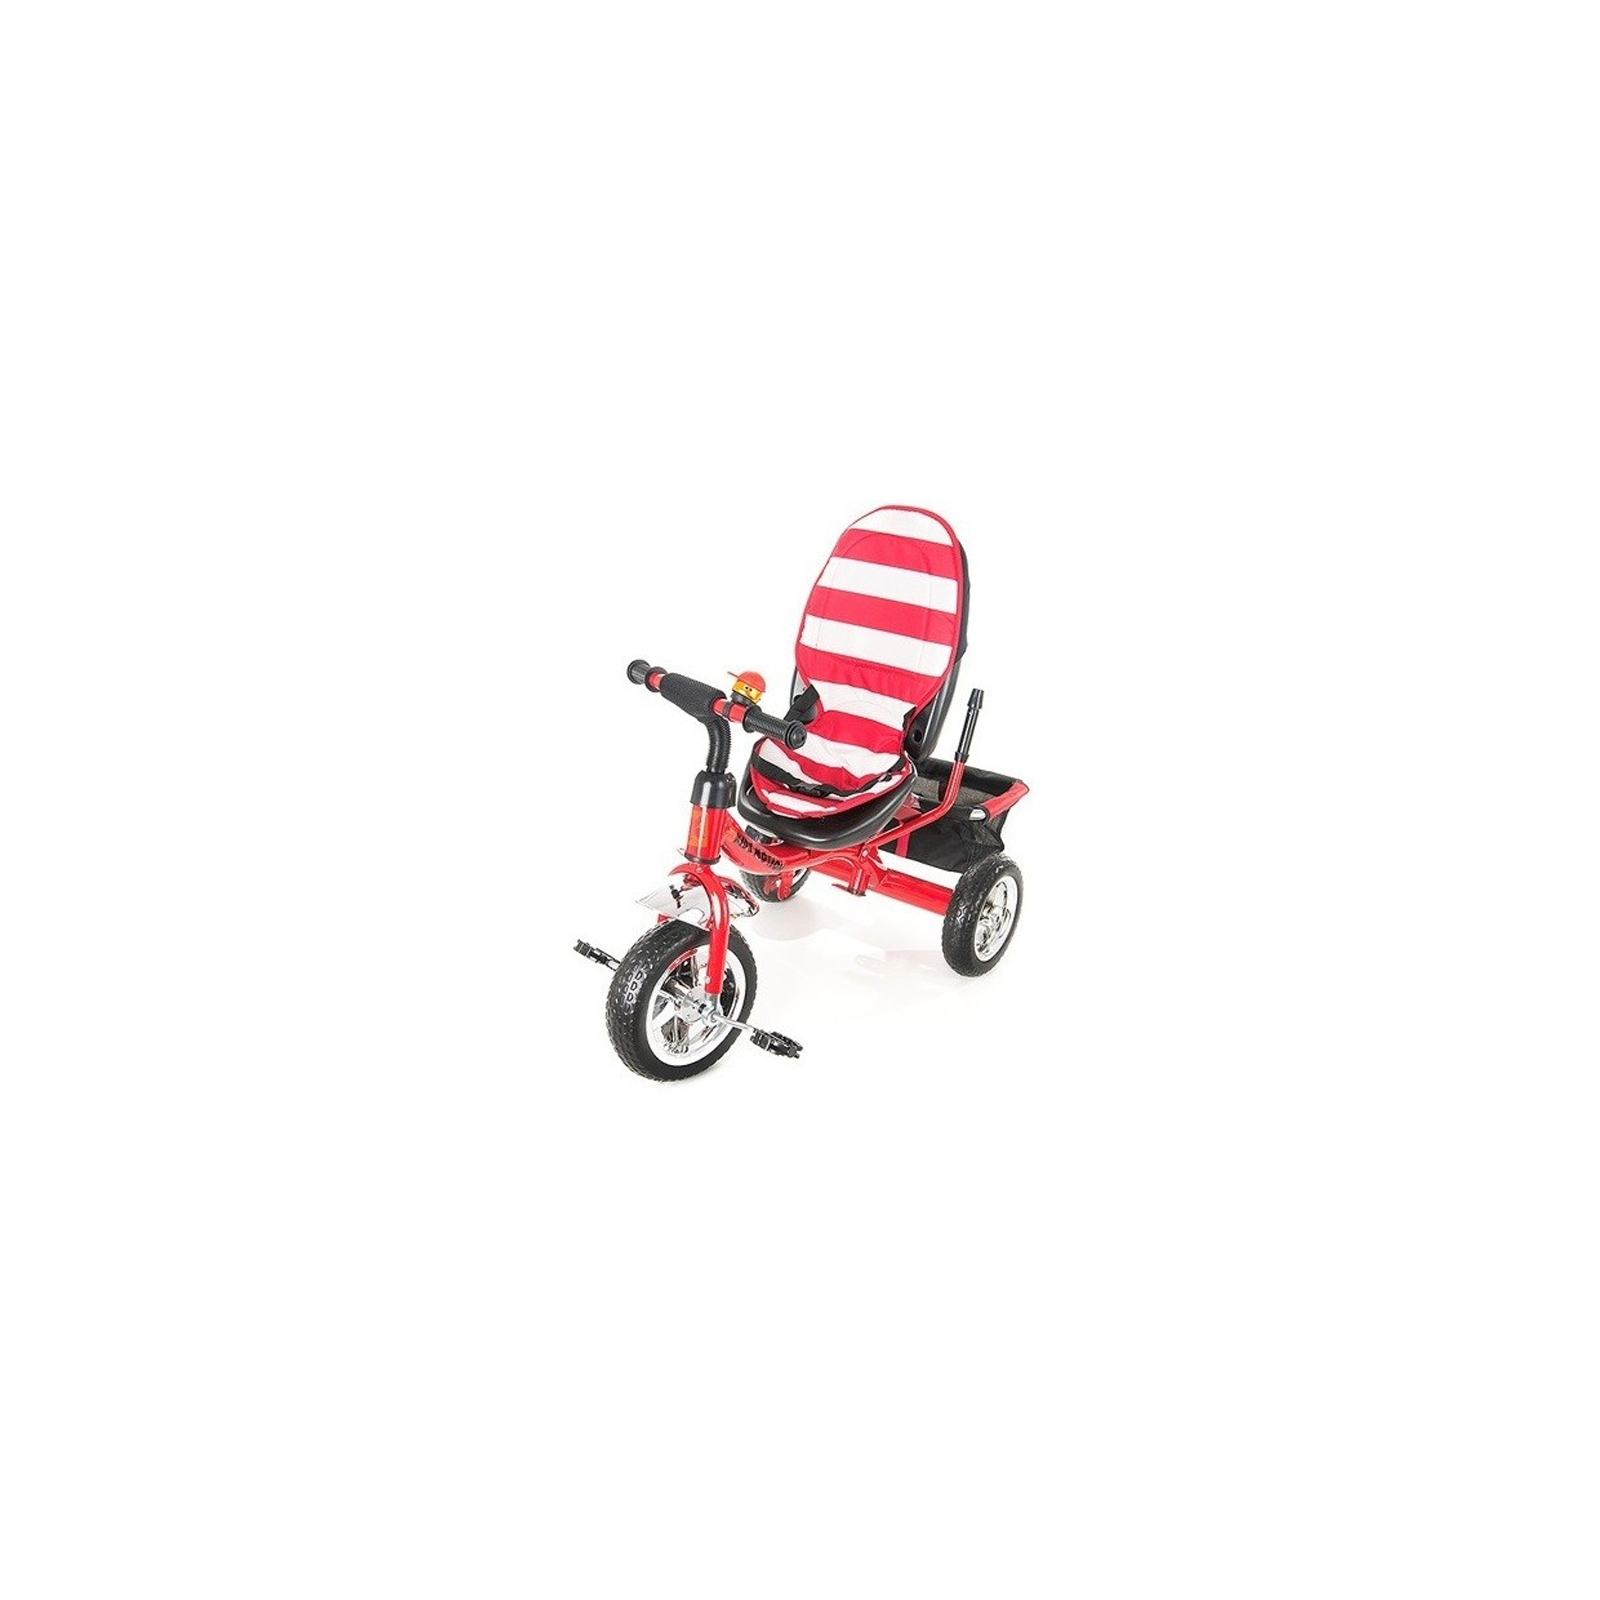 Детский велосипед KidzMotion Tobi Junior RED (115001/red) изображение 3